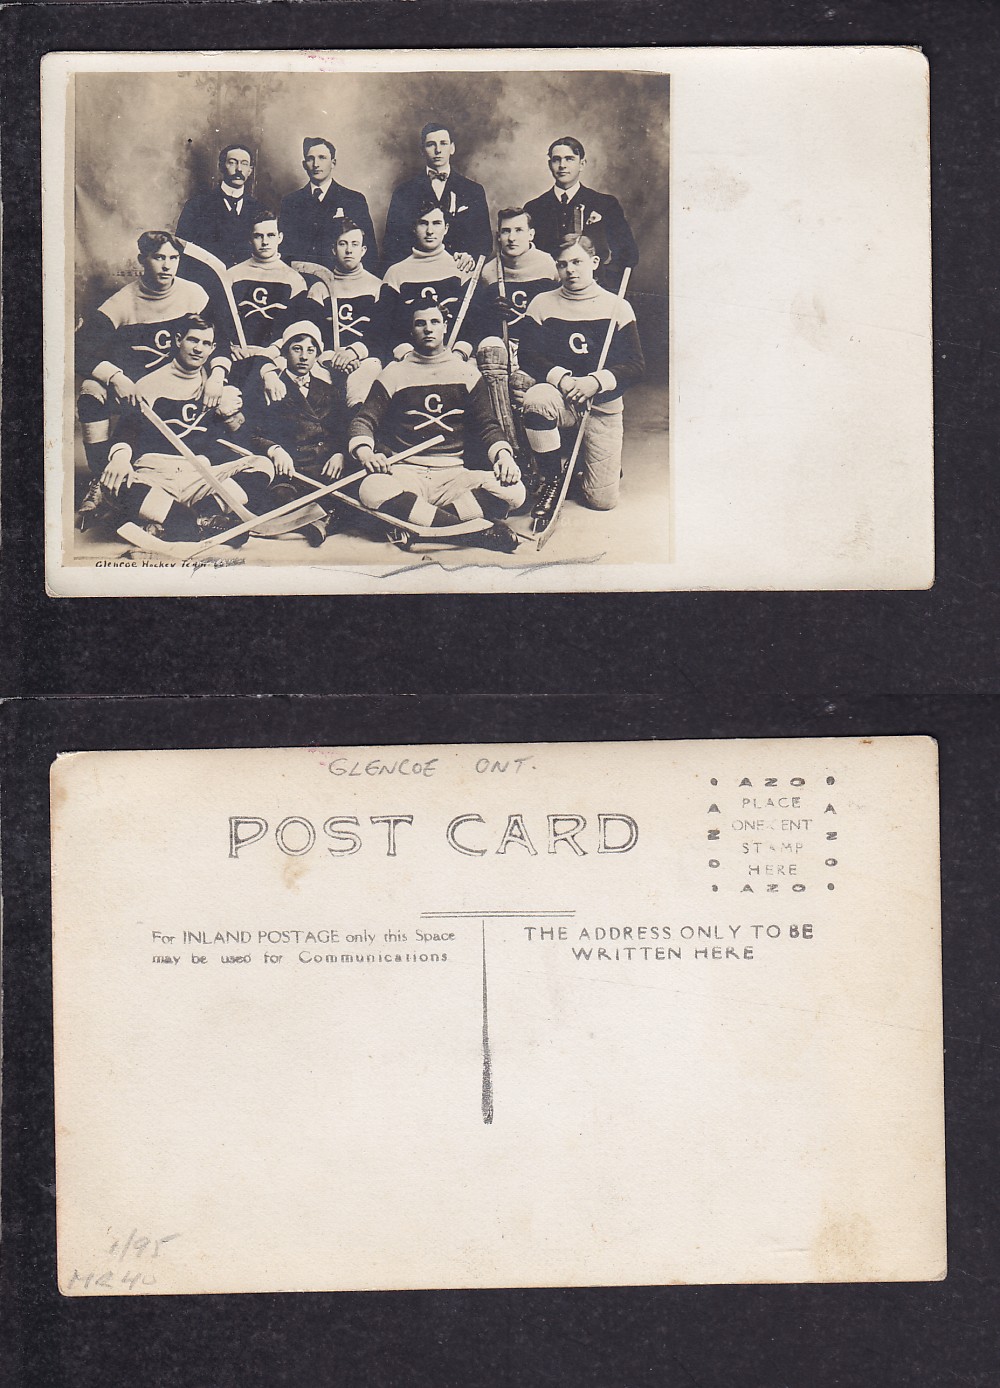 1900'S GLENCOE HOCKEY TEAM POST CARD photo